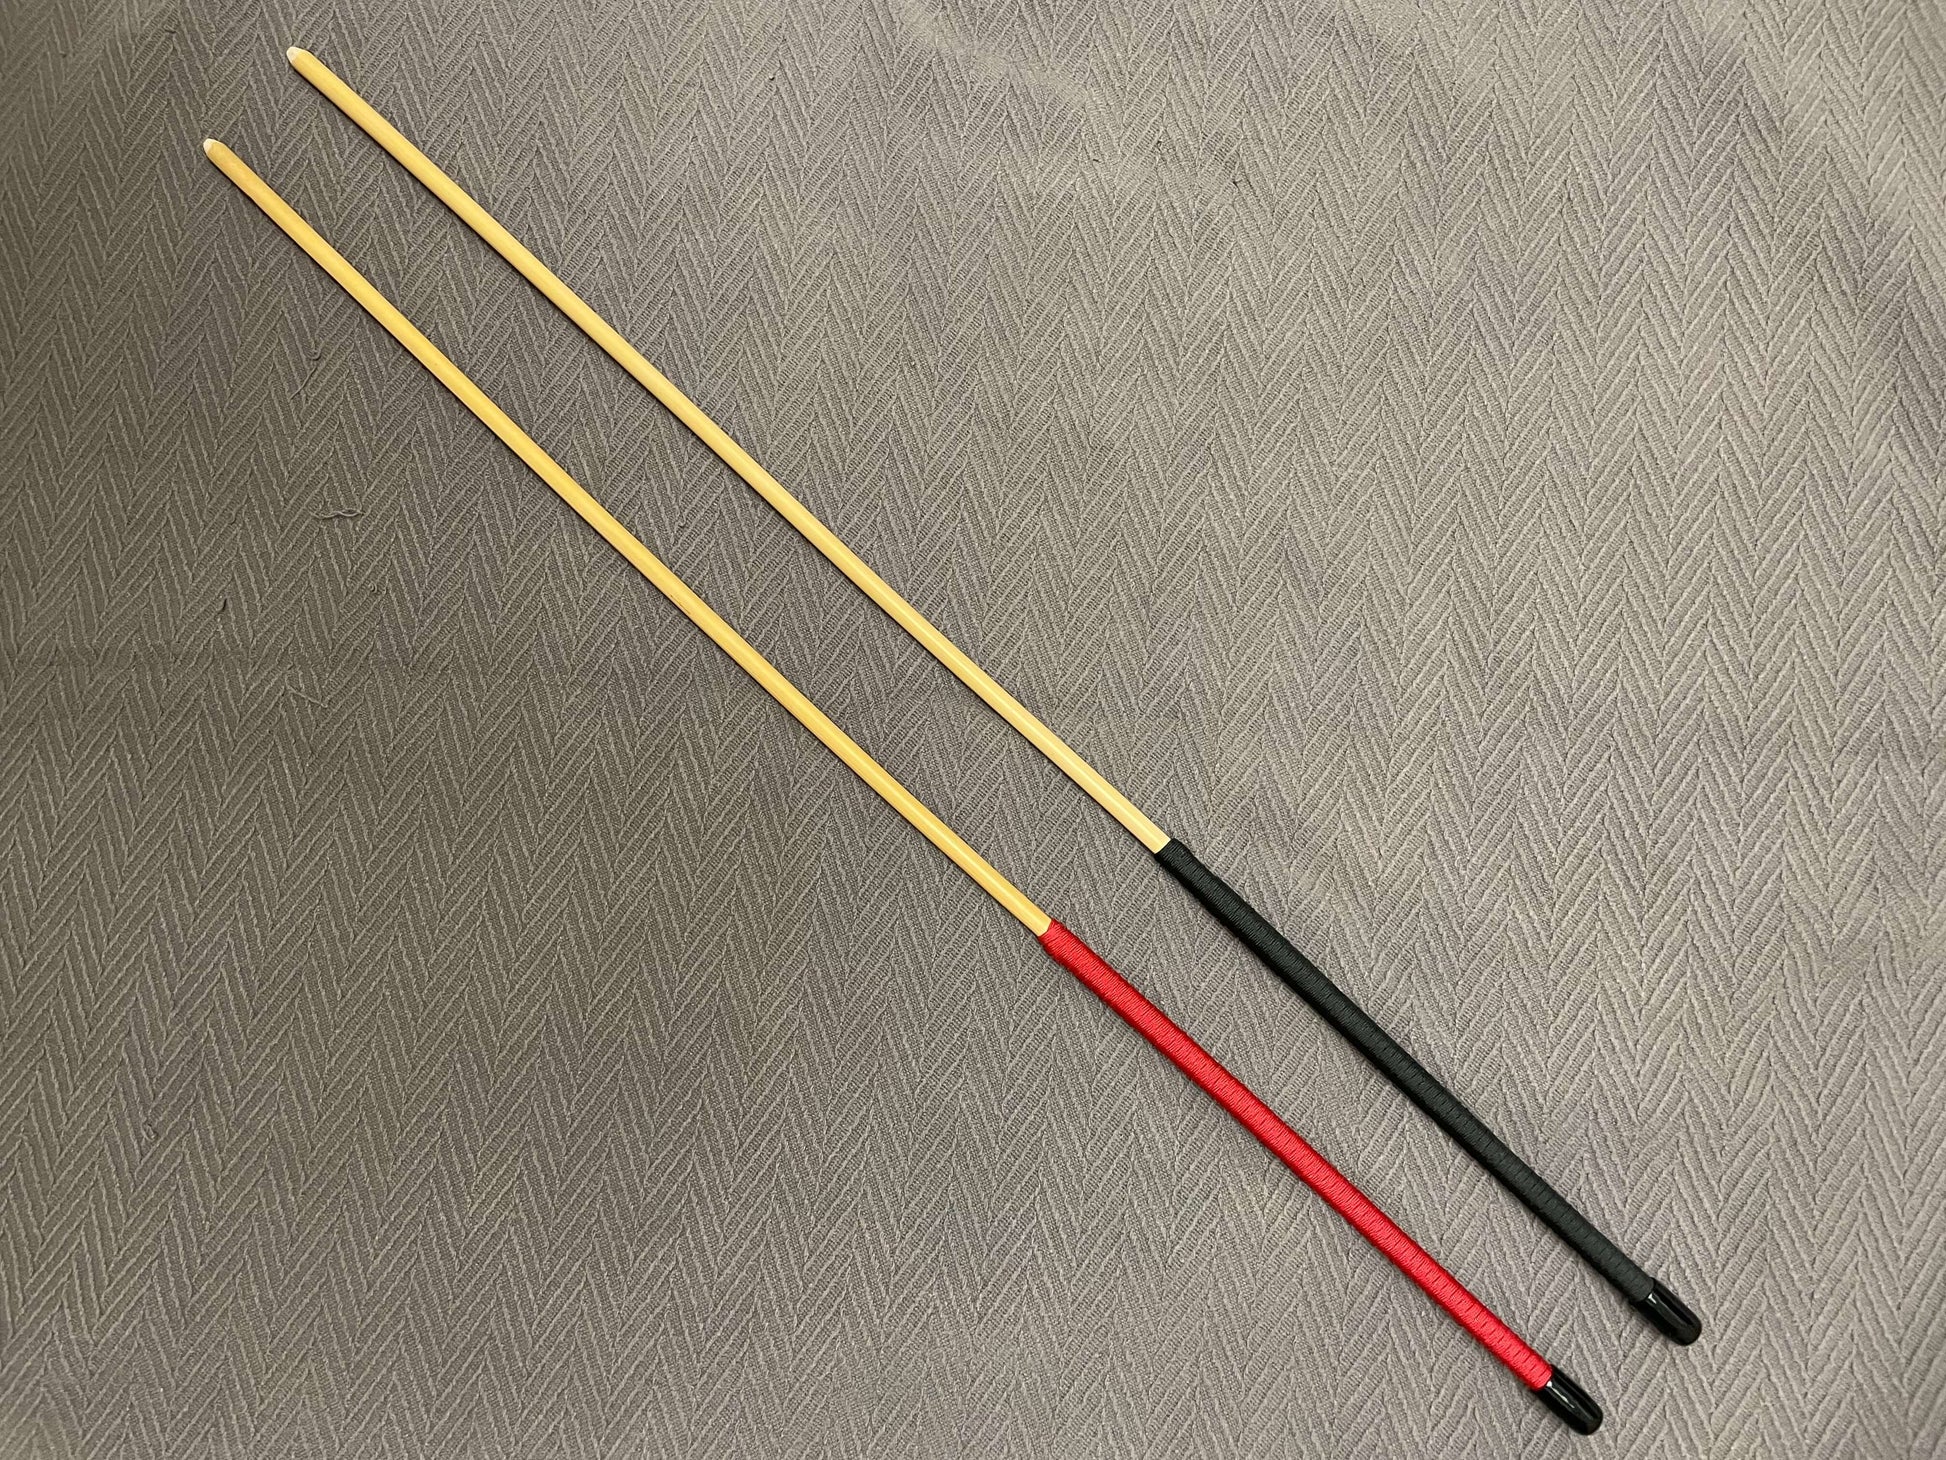 Classic Dragon Canes / Junior Cane / Senior Cane / Reformatory Cane - 90 - 95 cms Length - Red or Black Paracord Handles